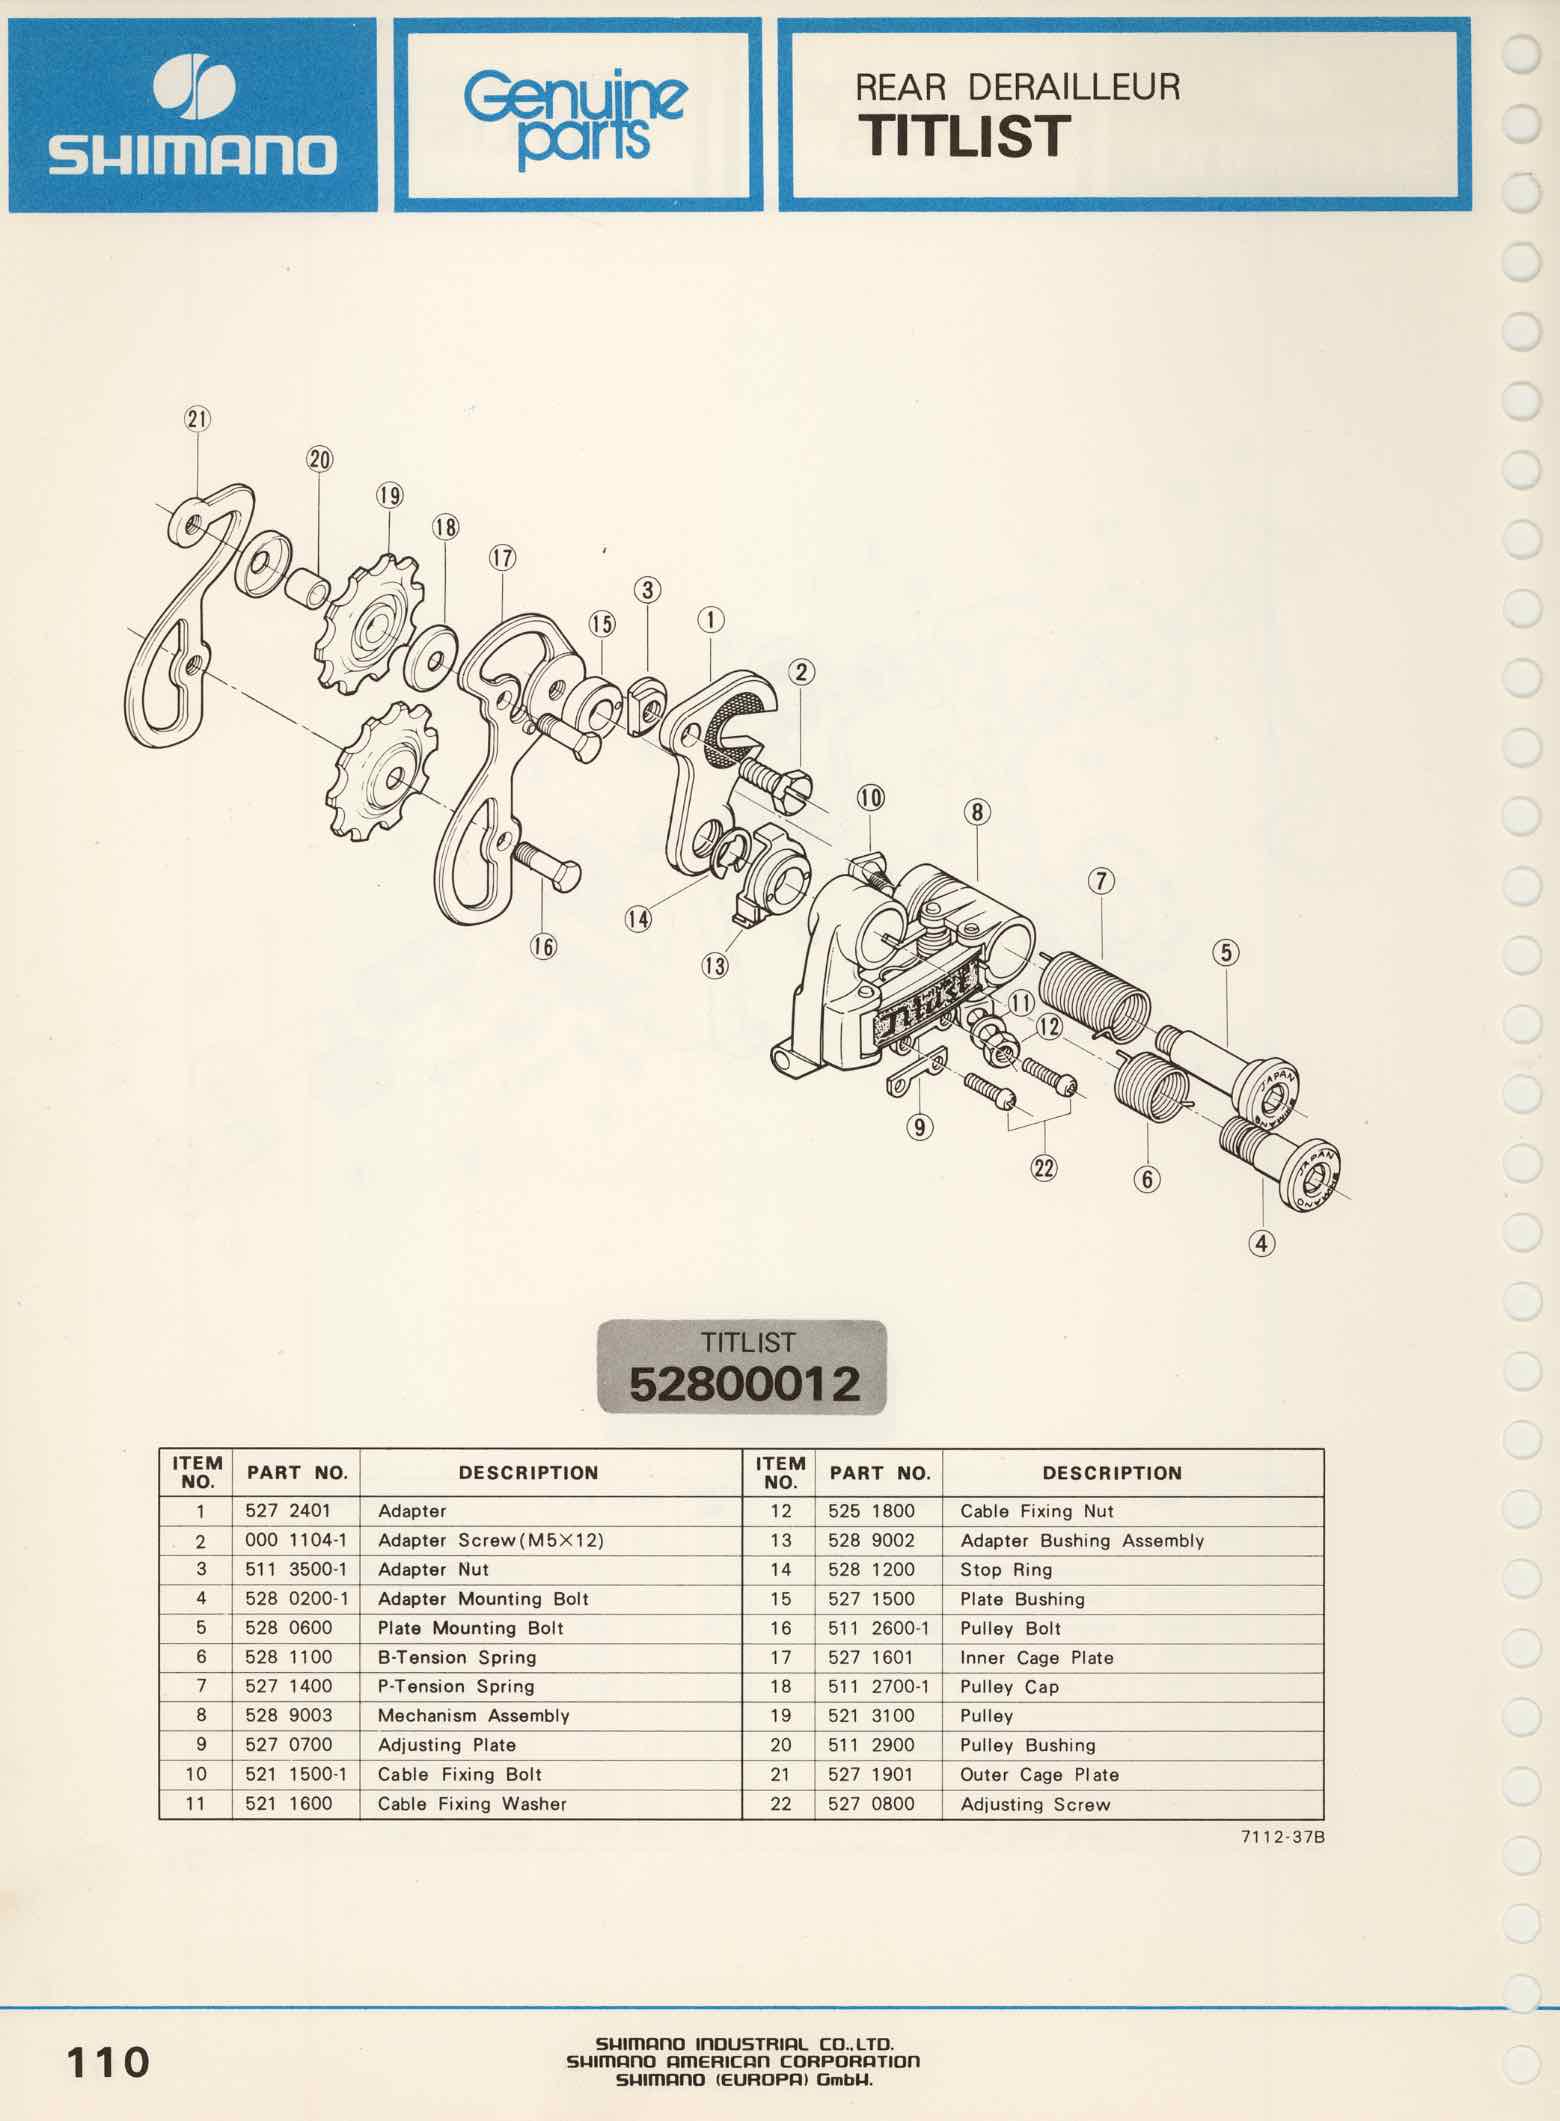 Shimano Bicycle Parts Catalog - 1973 page 110 main image